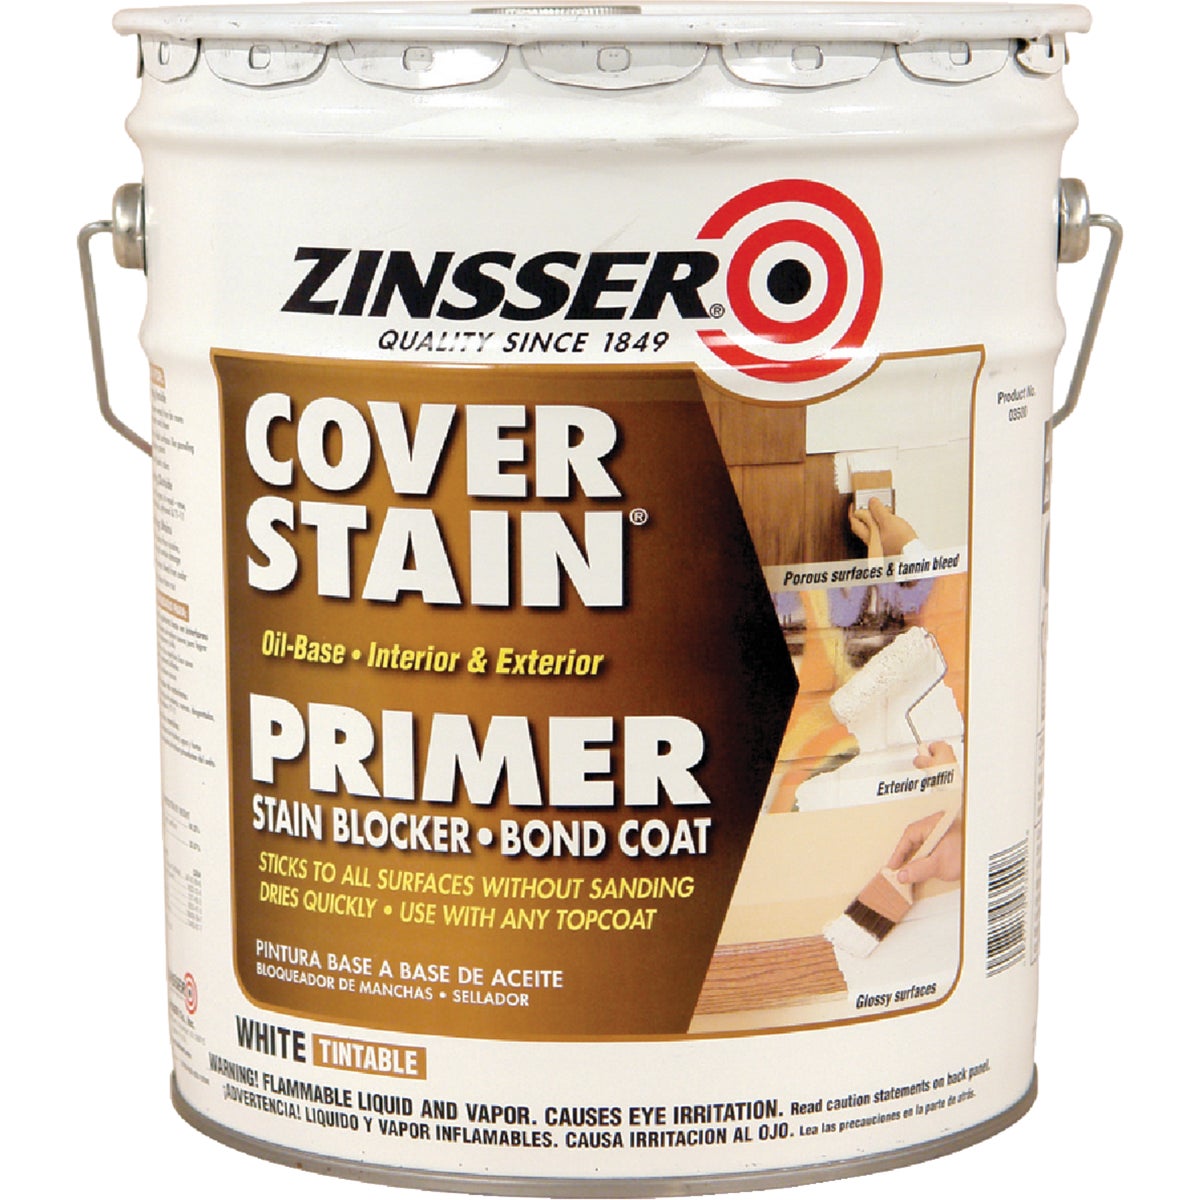 Zinsser Cover-Stain Oil-Base Interior/Exterior Sealer And Stain-Killer Primer, White, 5 Gal.